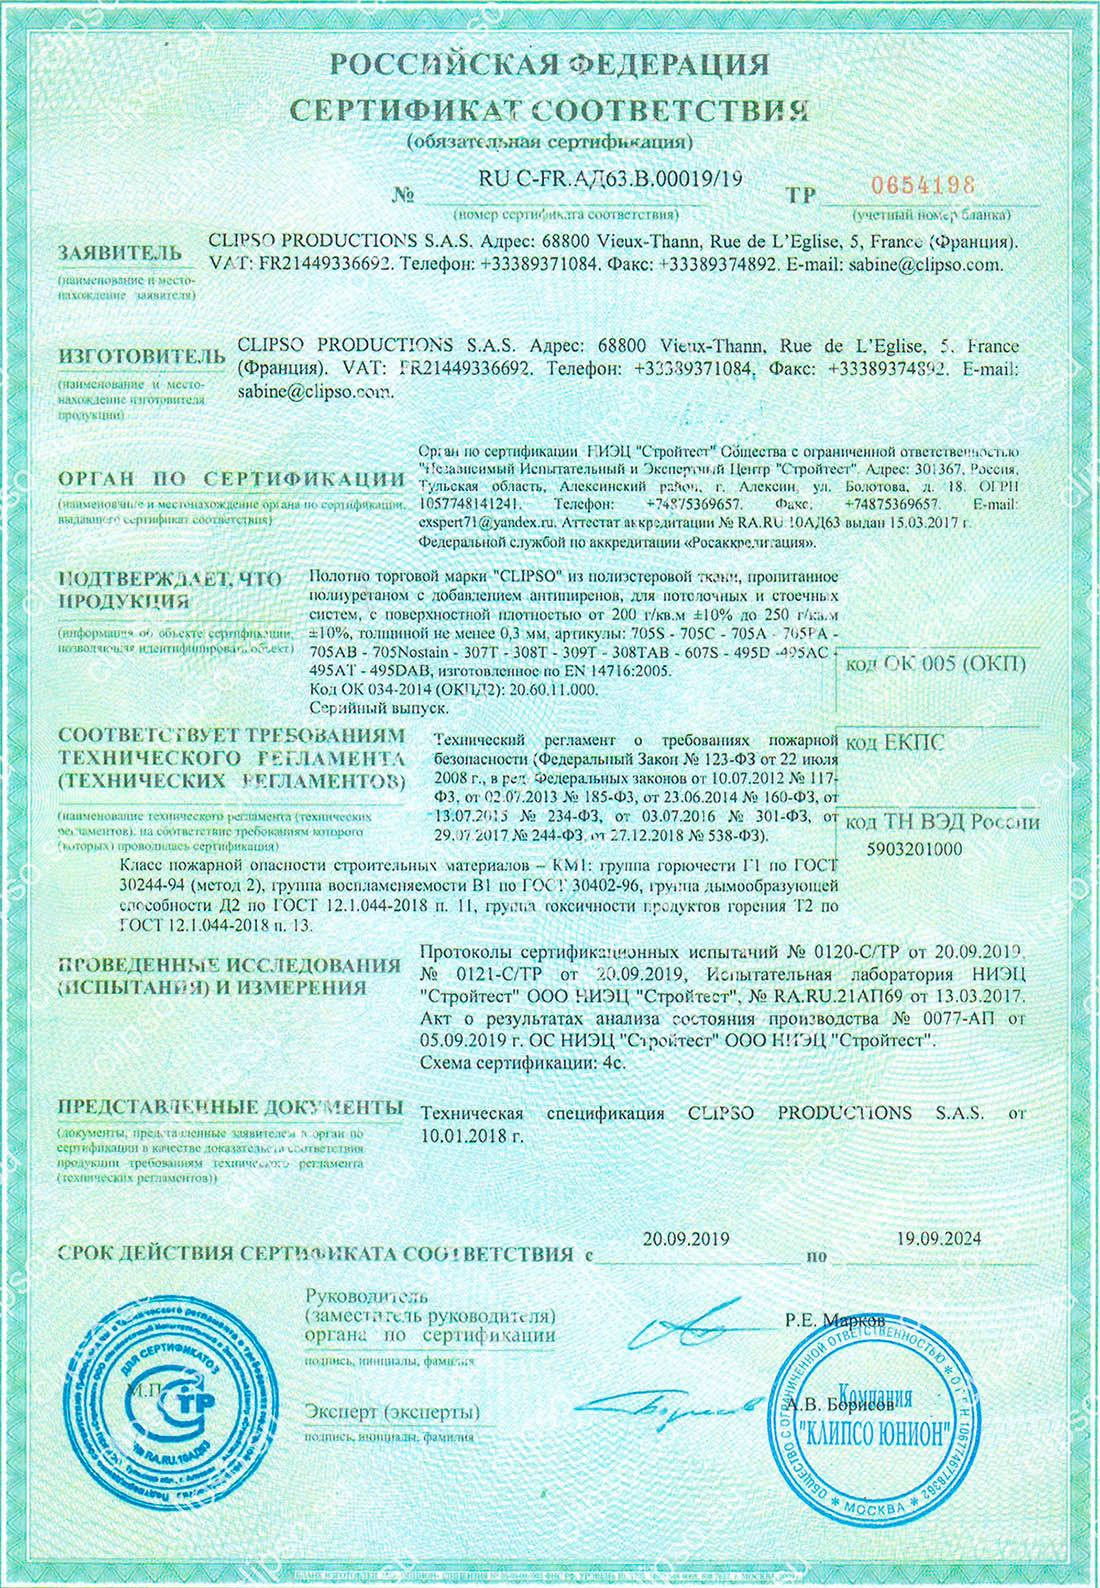 пожарный сертификат на мебельную ткань